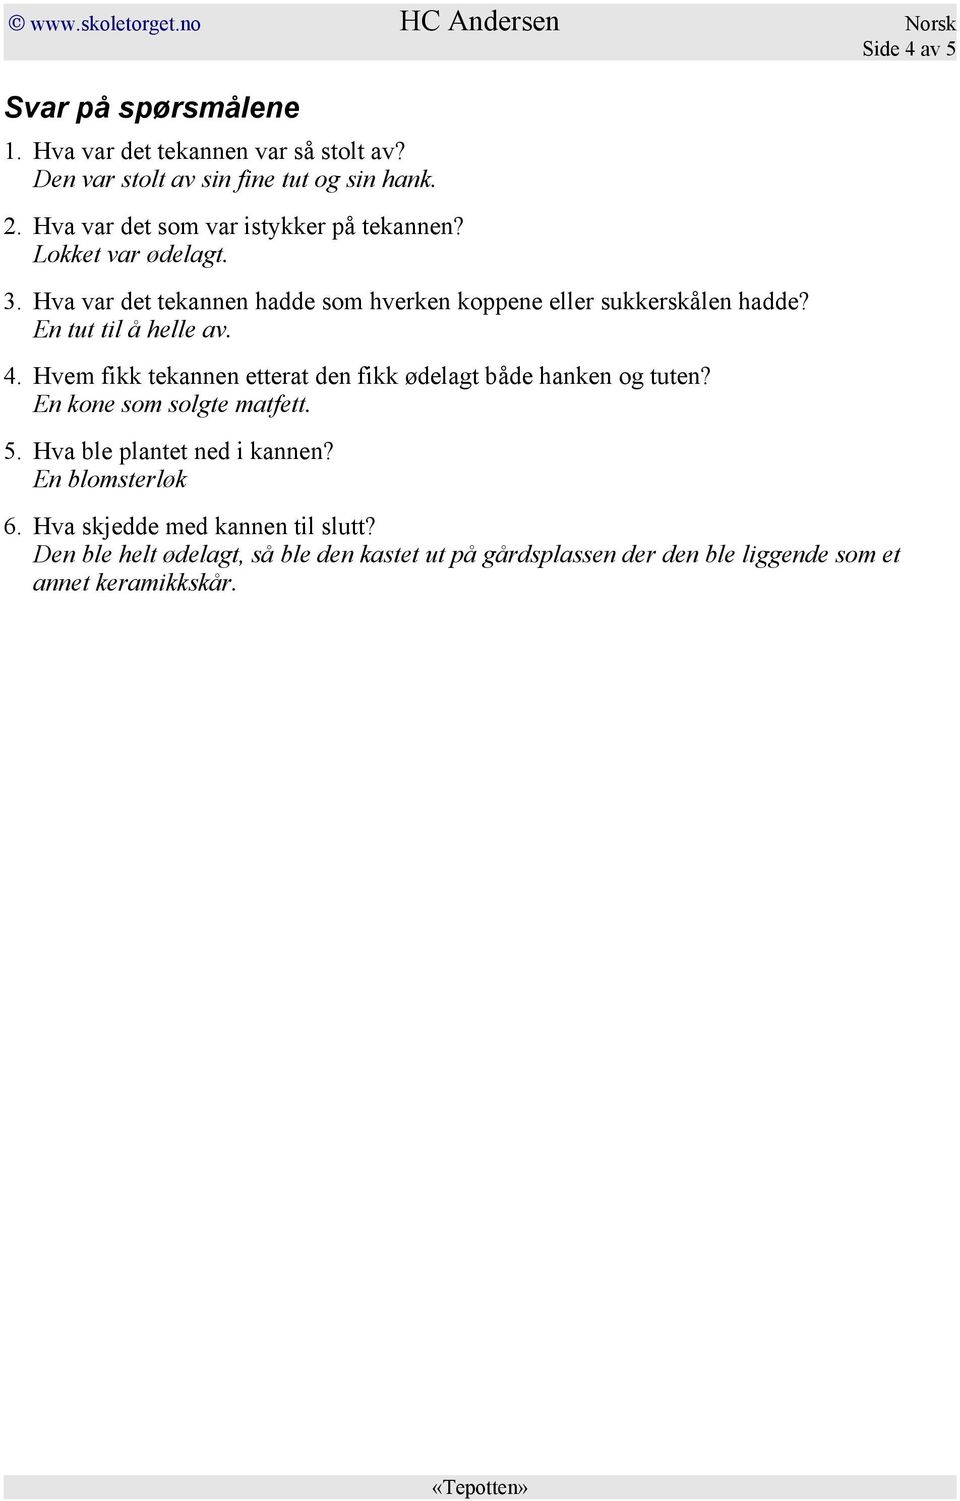 HC Andersen Norsk Side 1 av 5 Tepotten - PDF Gratis nedlasting